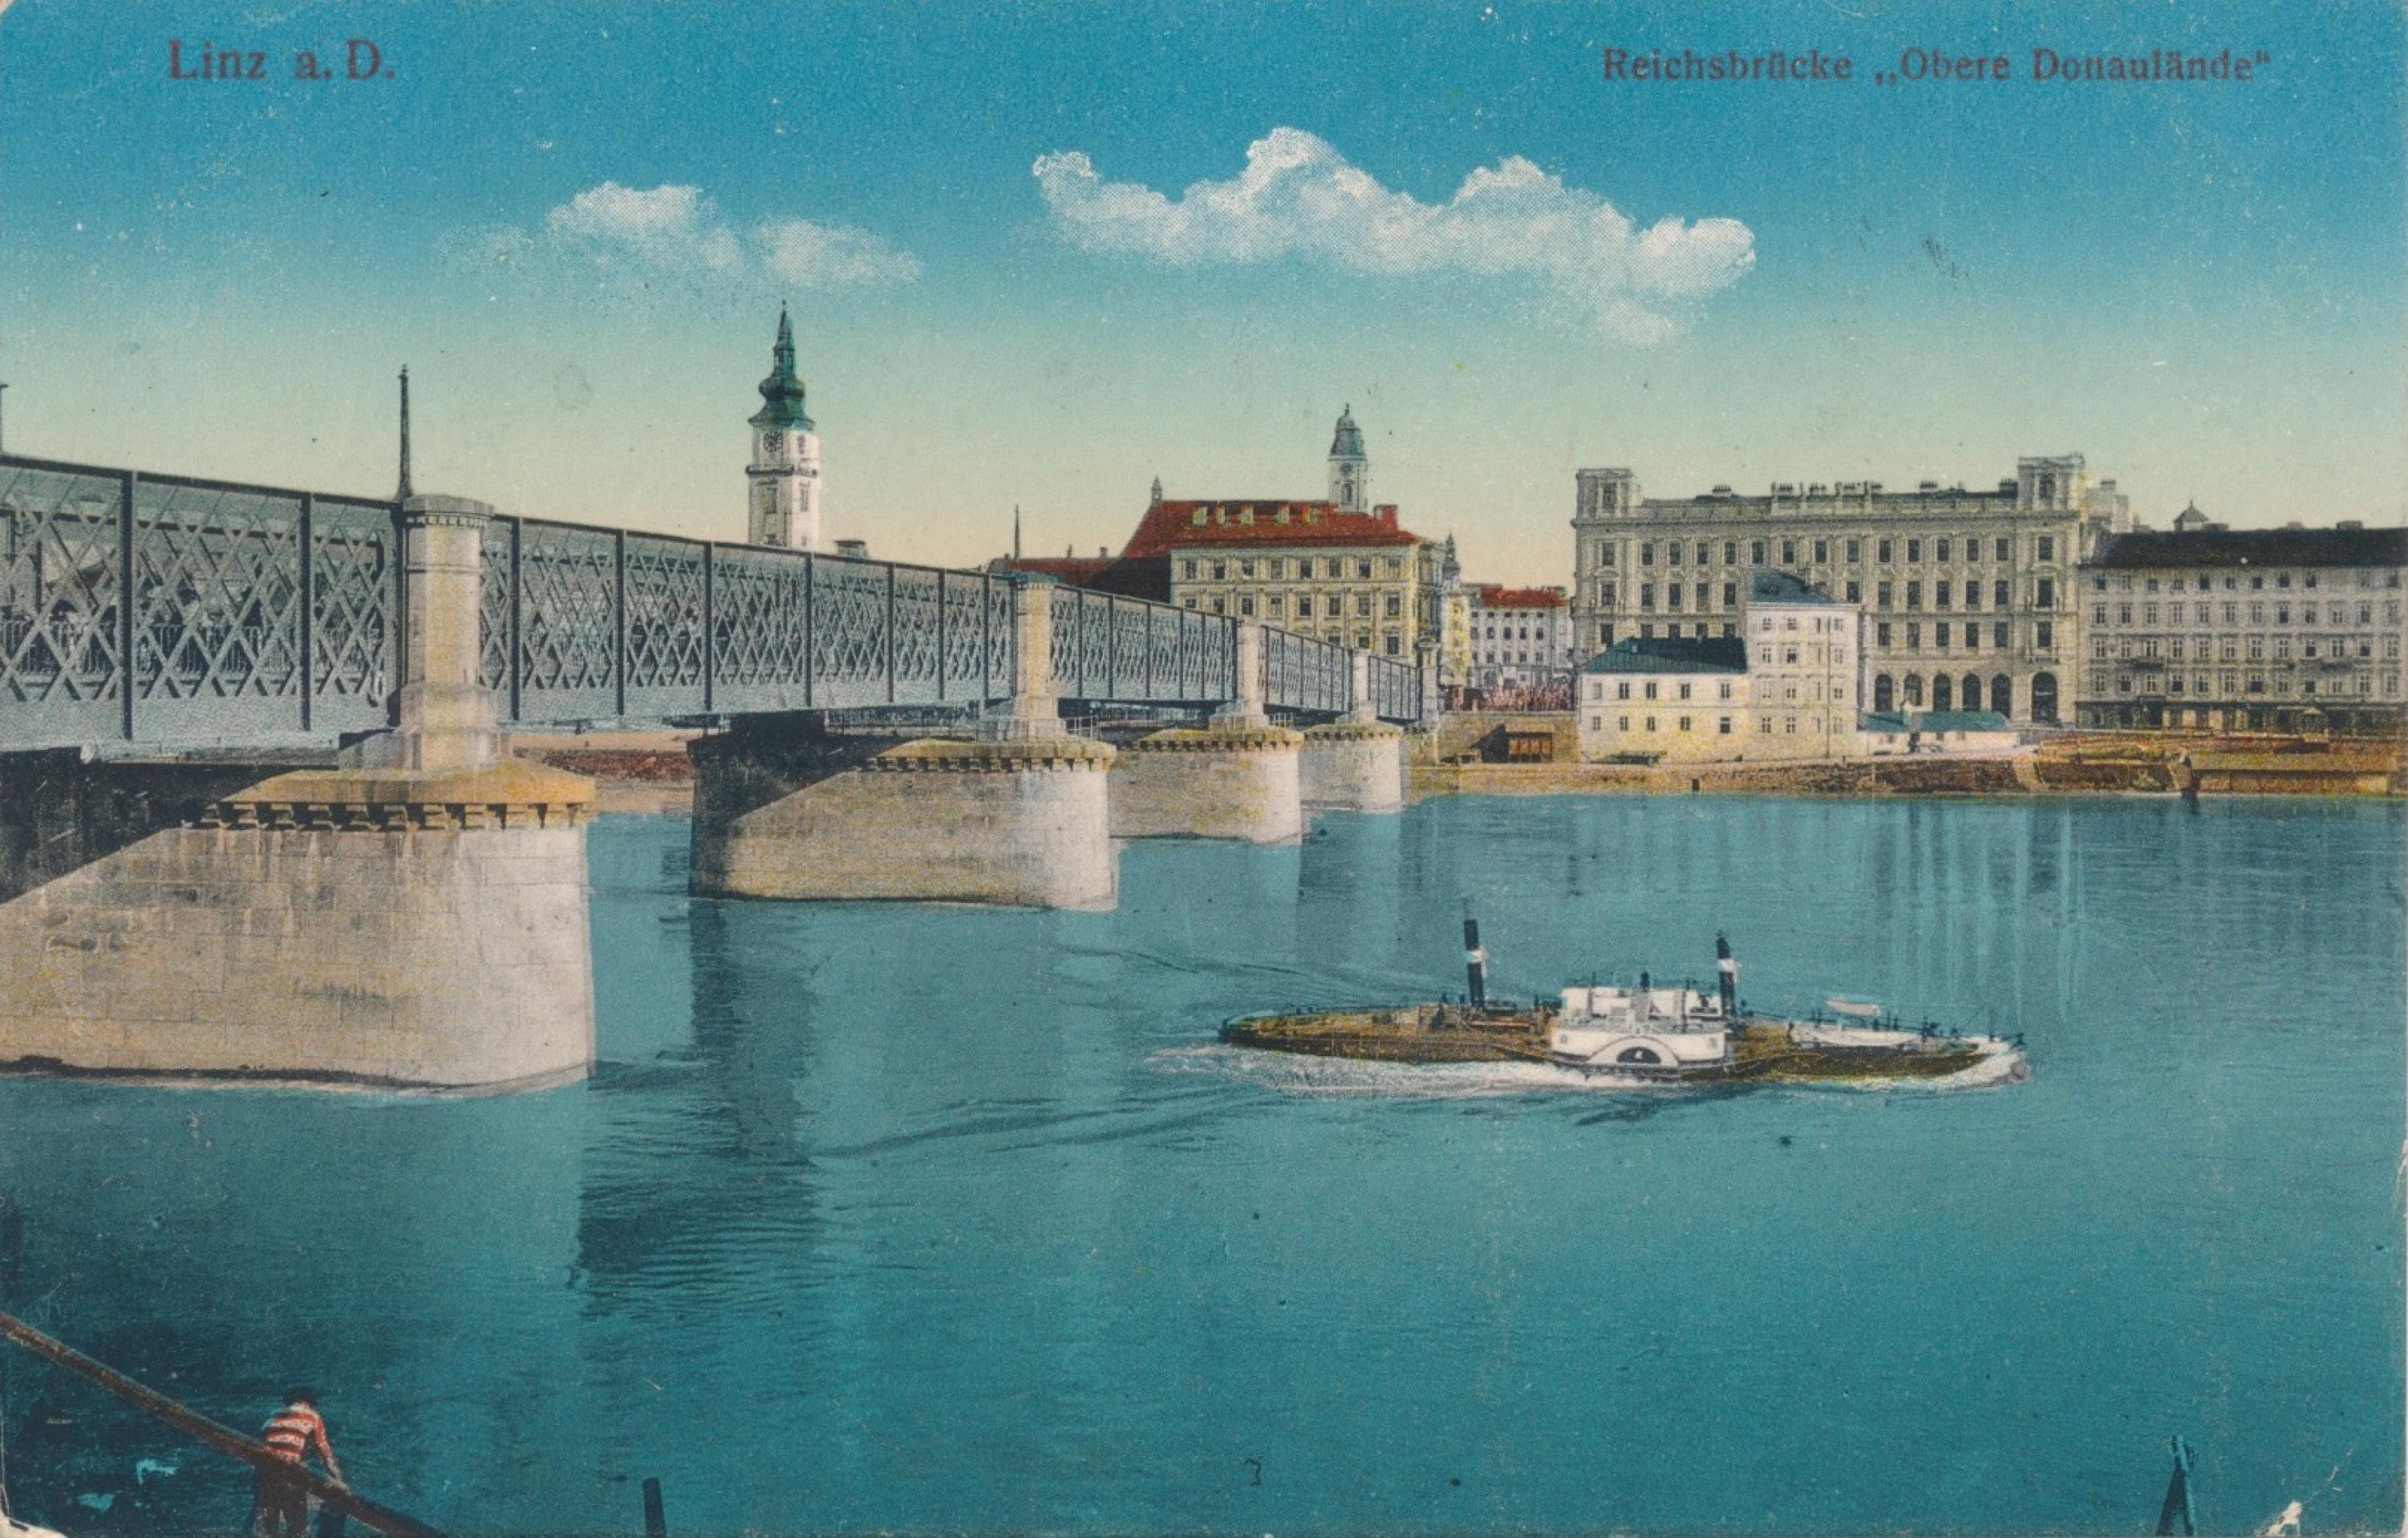 Brücke, Häuser, türkisblauer Fluss und Schiff.